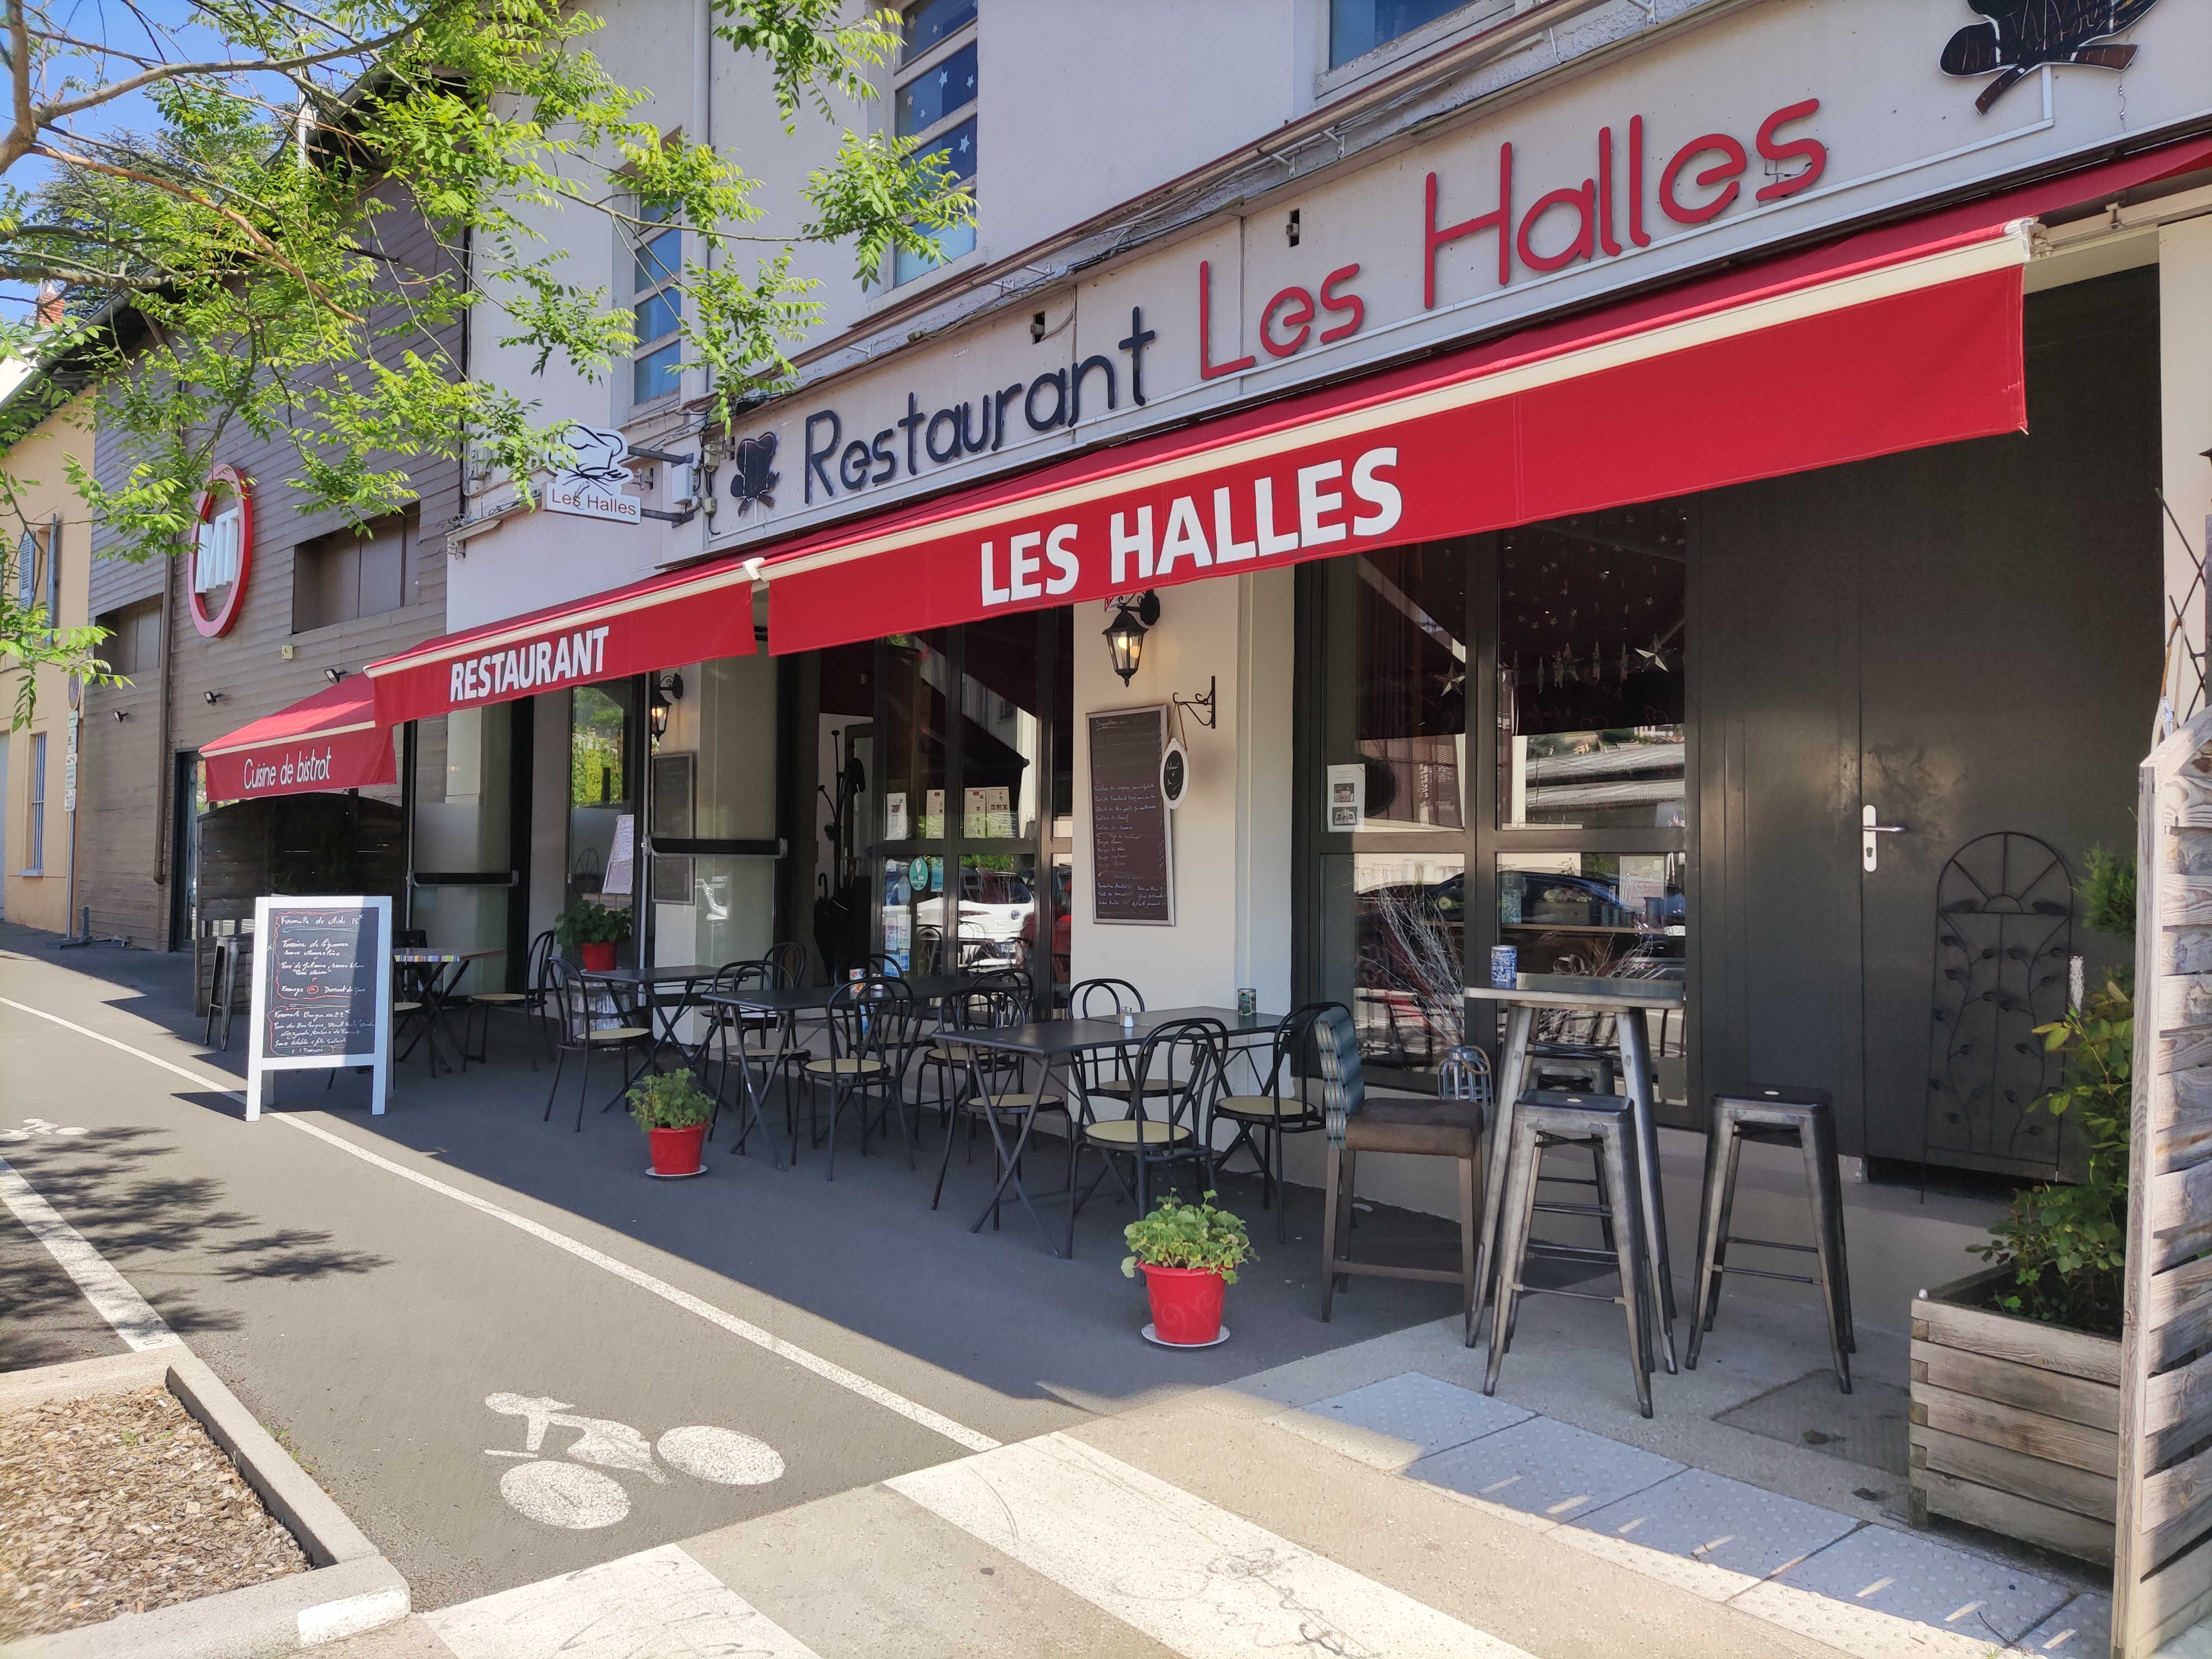 Restaurant "Les Halles"